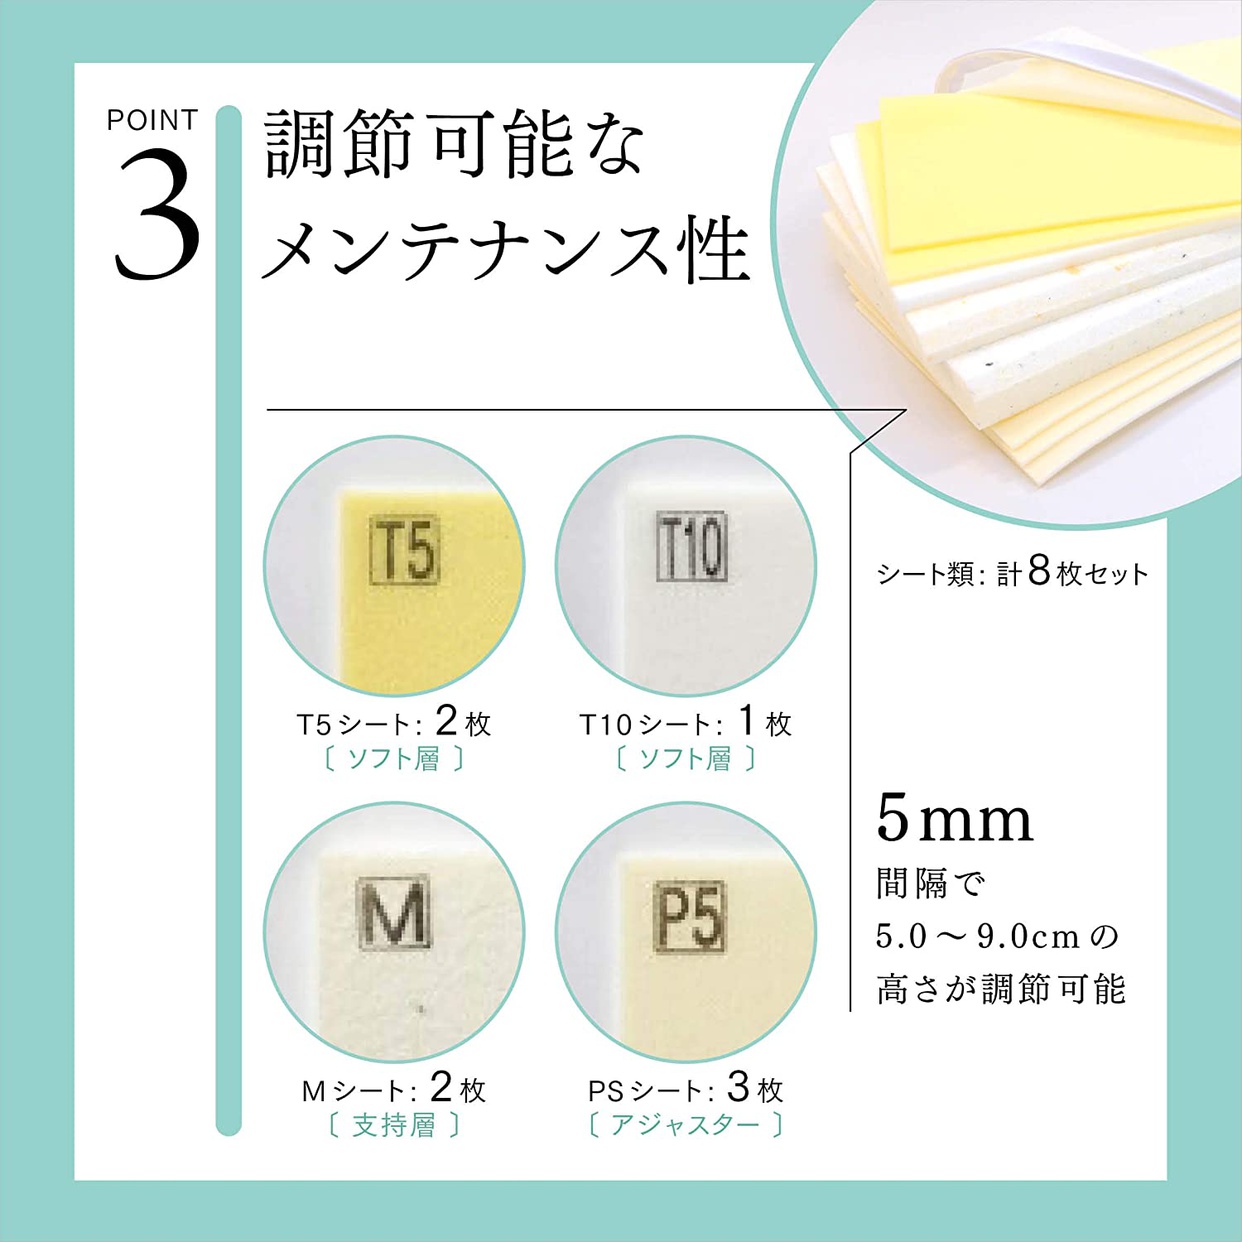 山田朱織枕研究所 整形外科枕ライトの商品画像6 